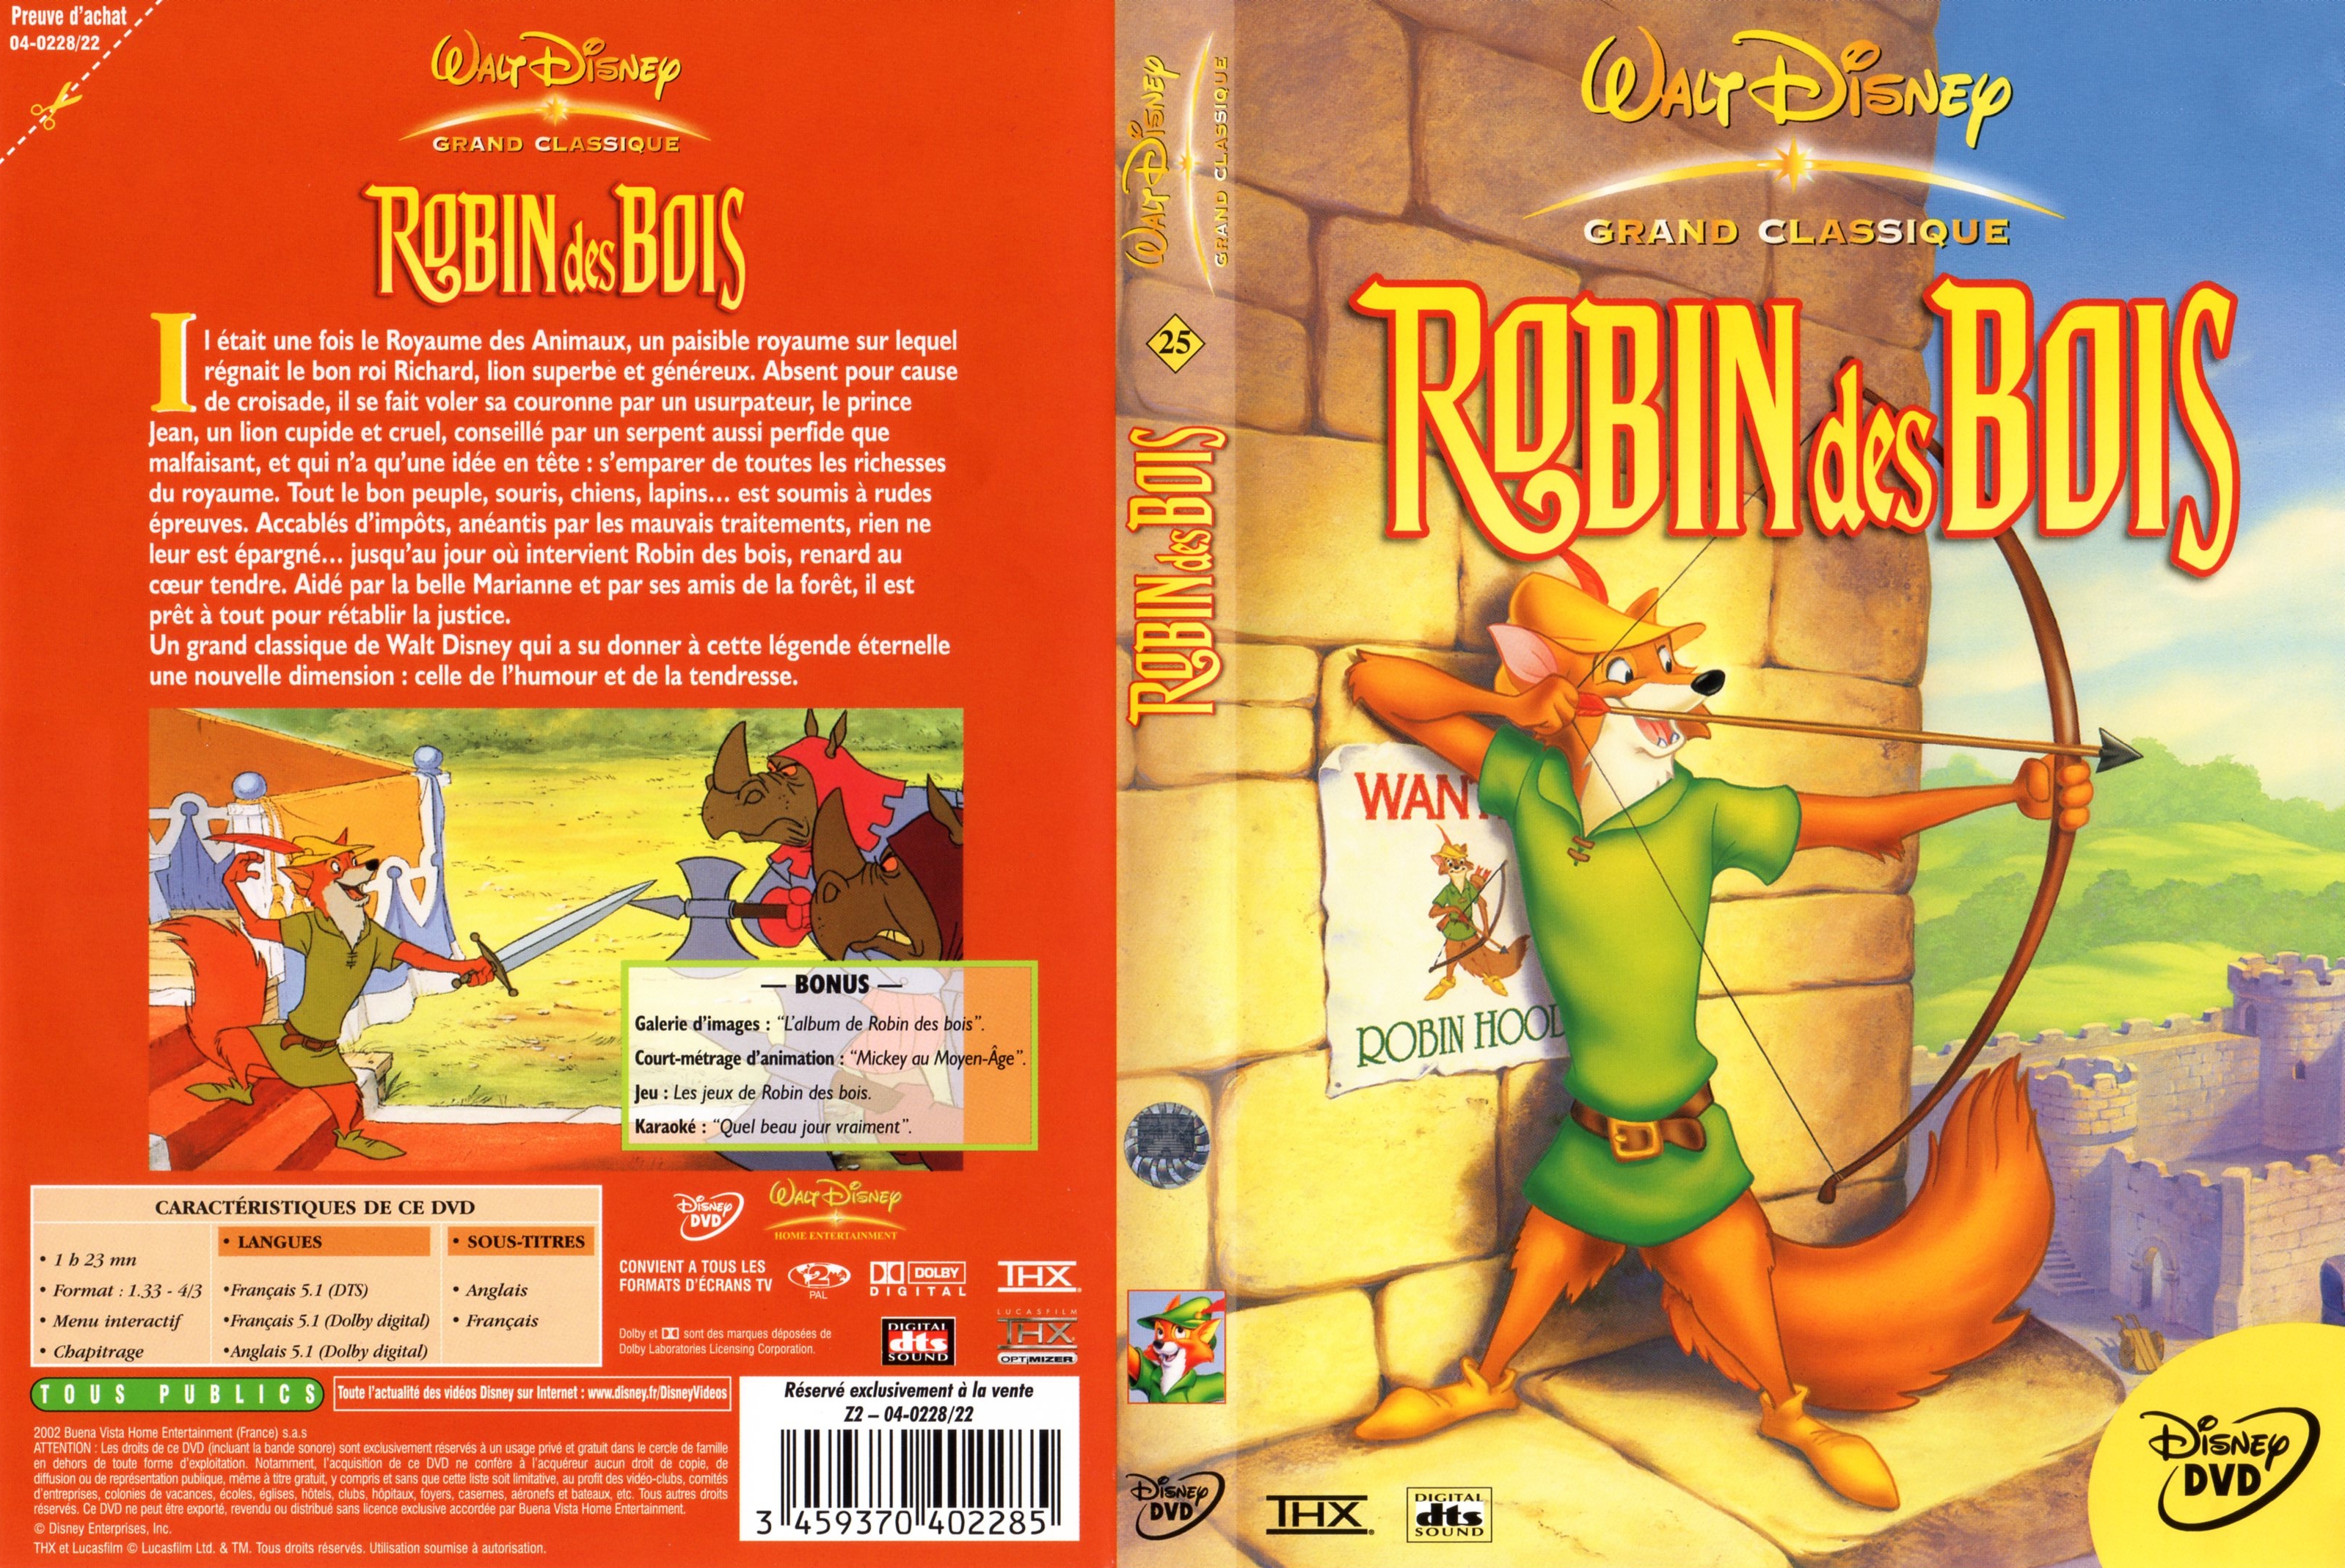 Jaquette DVD Robin des bois